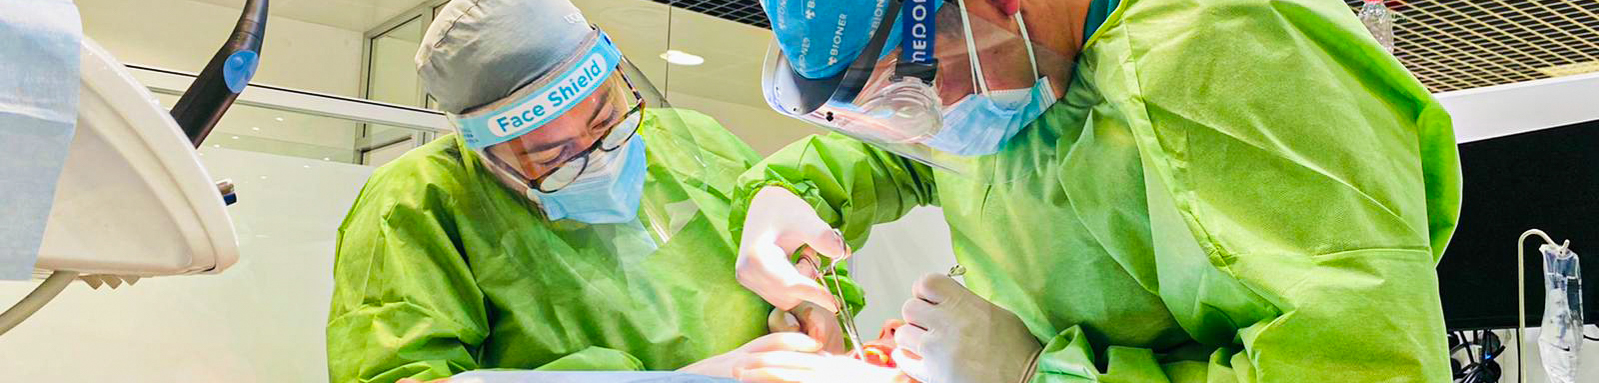 curso implantes dentales